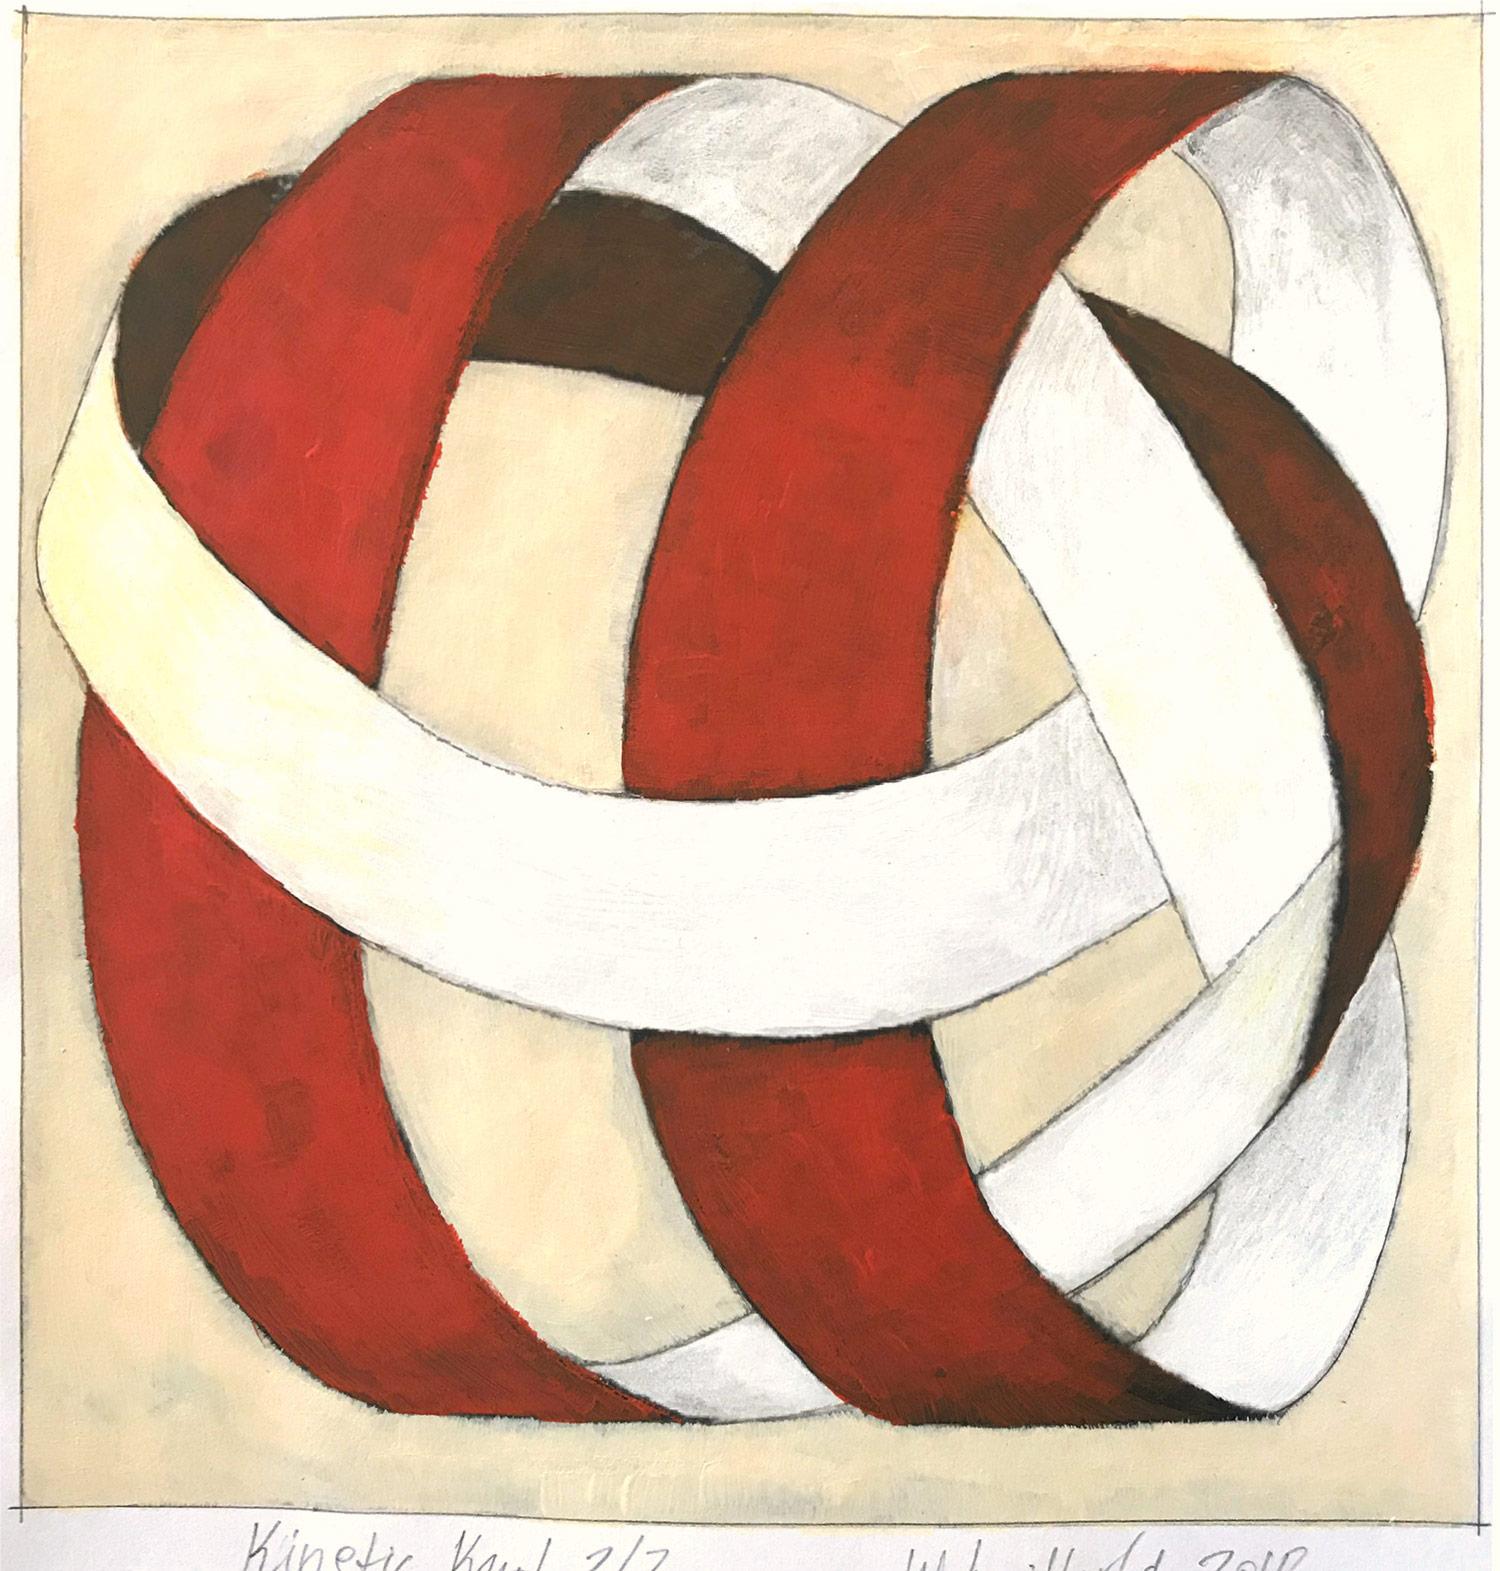 „Kinetic Knot No. 2/2“ Abstraktes, gegenständliches, gegenständliches Knotengemälde auf Papier – Painting von Wolfgang Leidhold